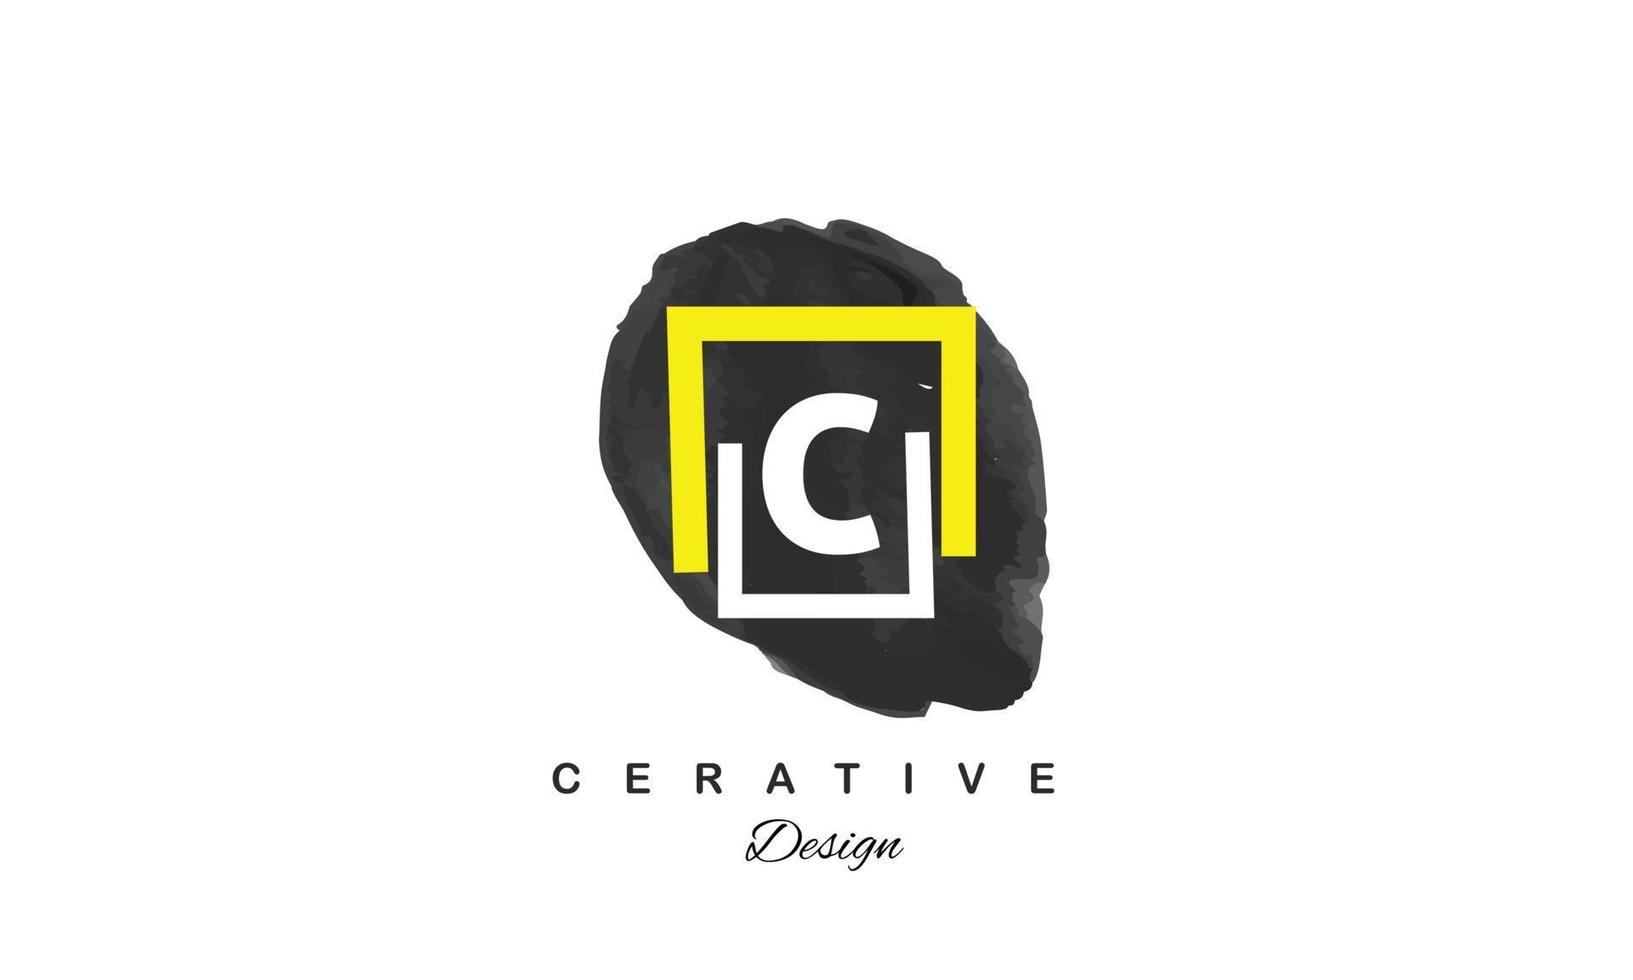 c Wasser Farbe Logo künstlerisch, schick, modisch Hand gezeichnet Vektor Design auf schwarz Hintergrund.